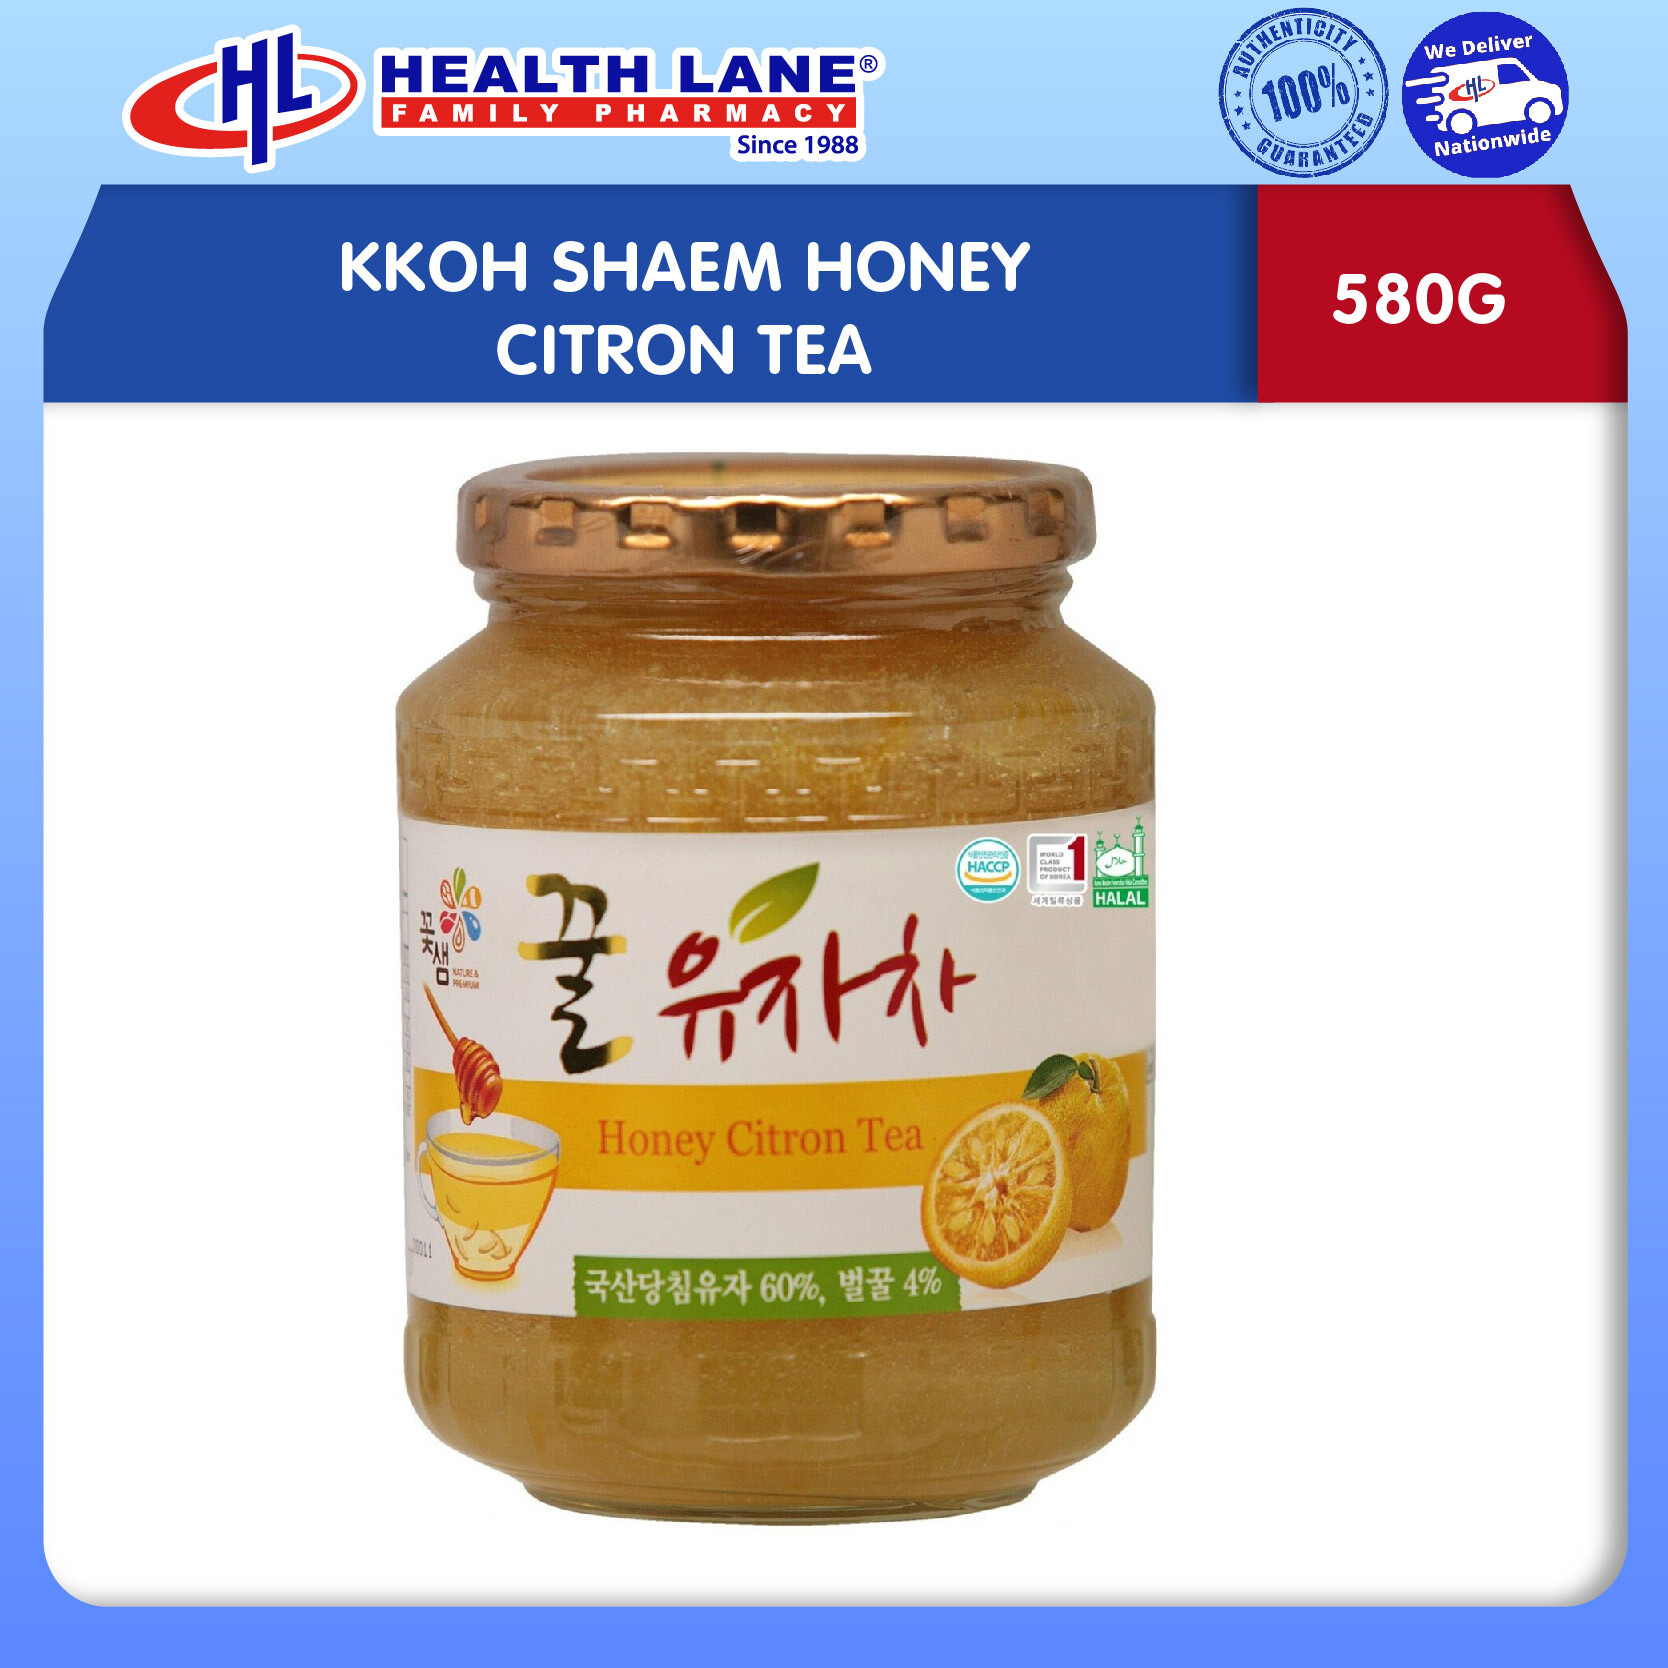 KKOH SHAEM HONEY CITRON TEA (580G)